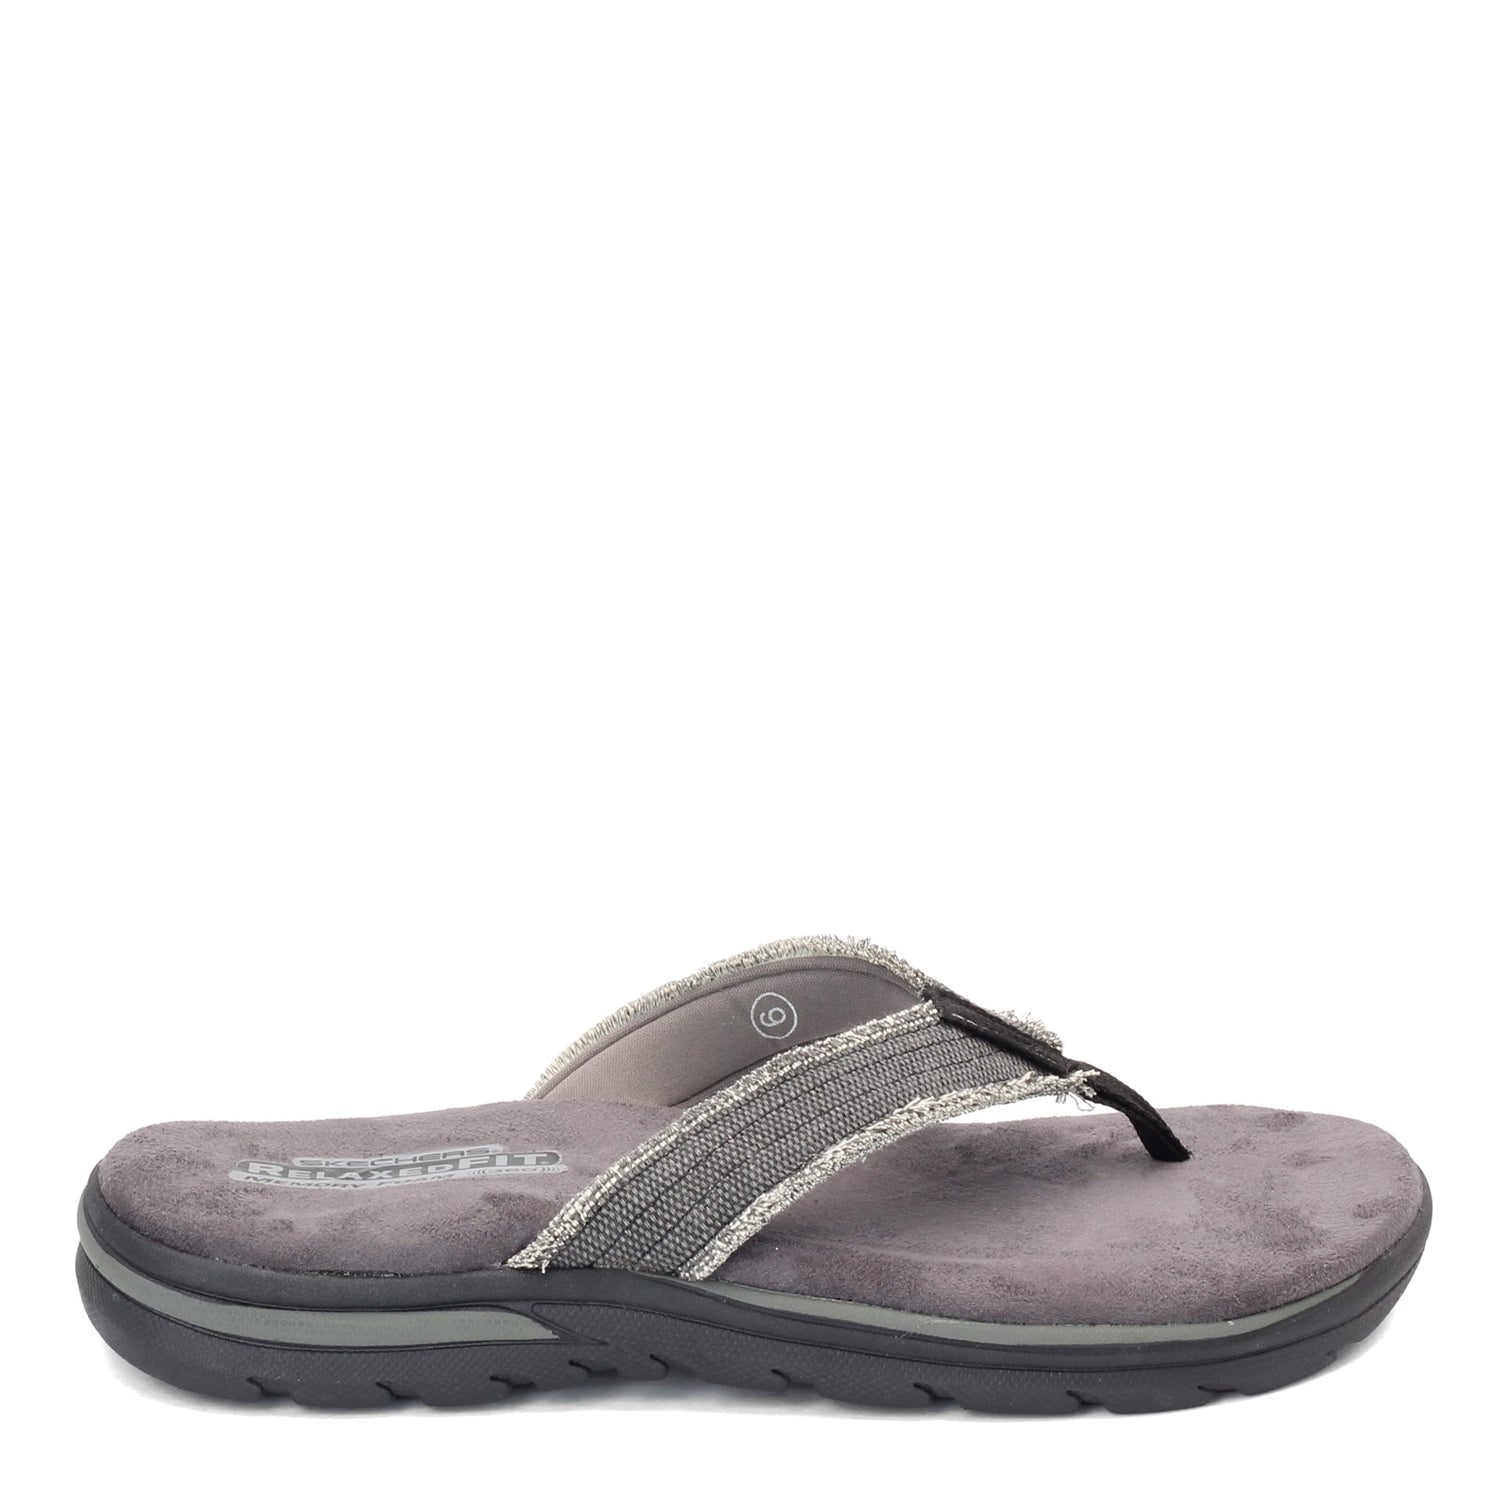 Peltz Shoes  Men's Skechers Relaxed Fit: Supreme - Bosnia Sandal BLACK 64152-BLK